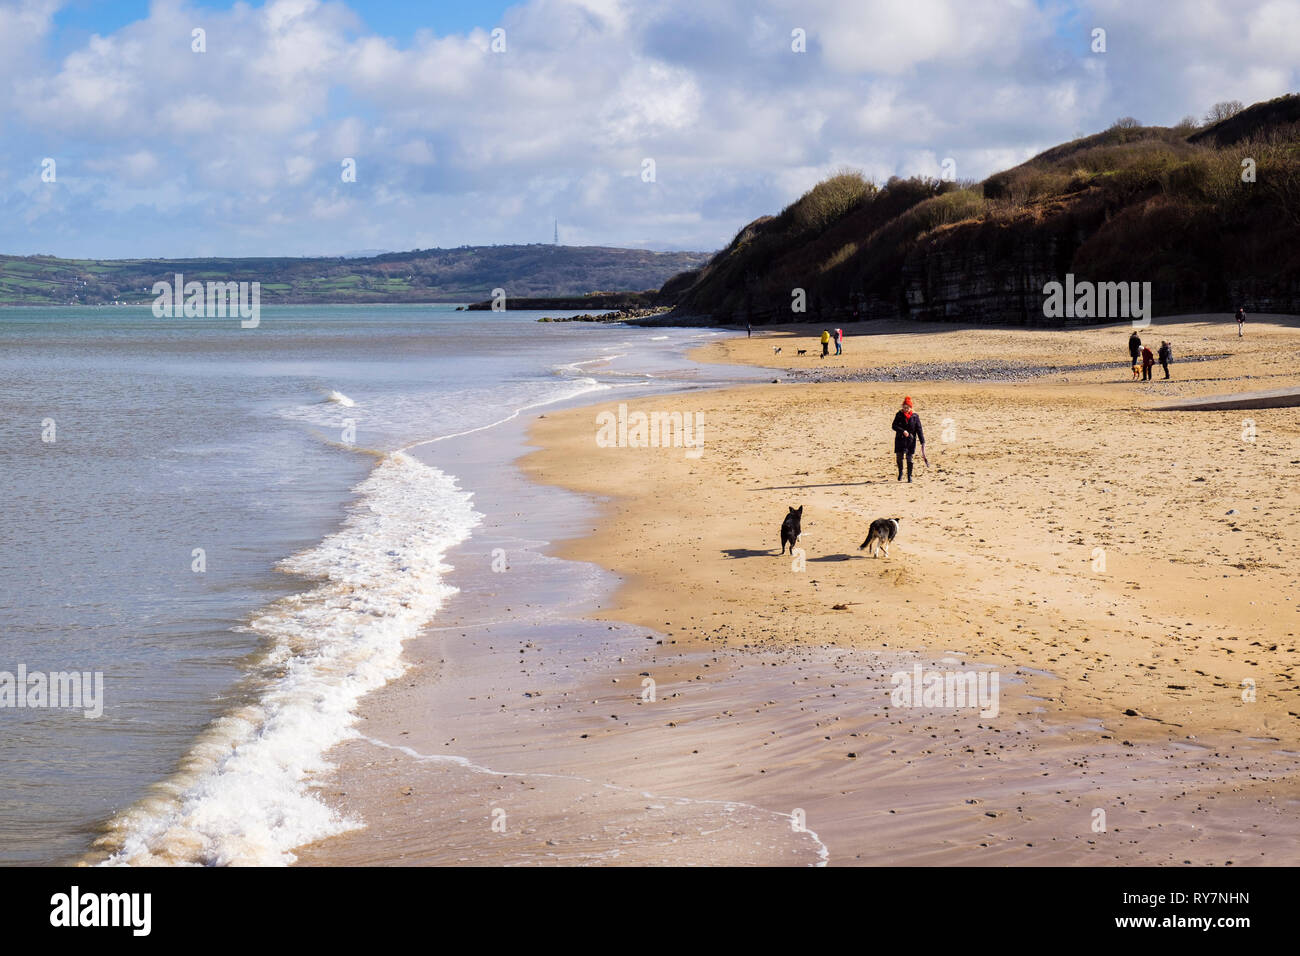 Hund Spaziergänger auf dem ruhigen Sandstrand im Winter Sonnenschein bei Flut. Benllech, Isle of Anglesey, North Wales, UK, Großbritannien Stockfoto